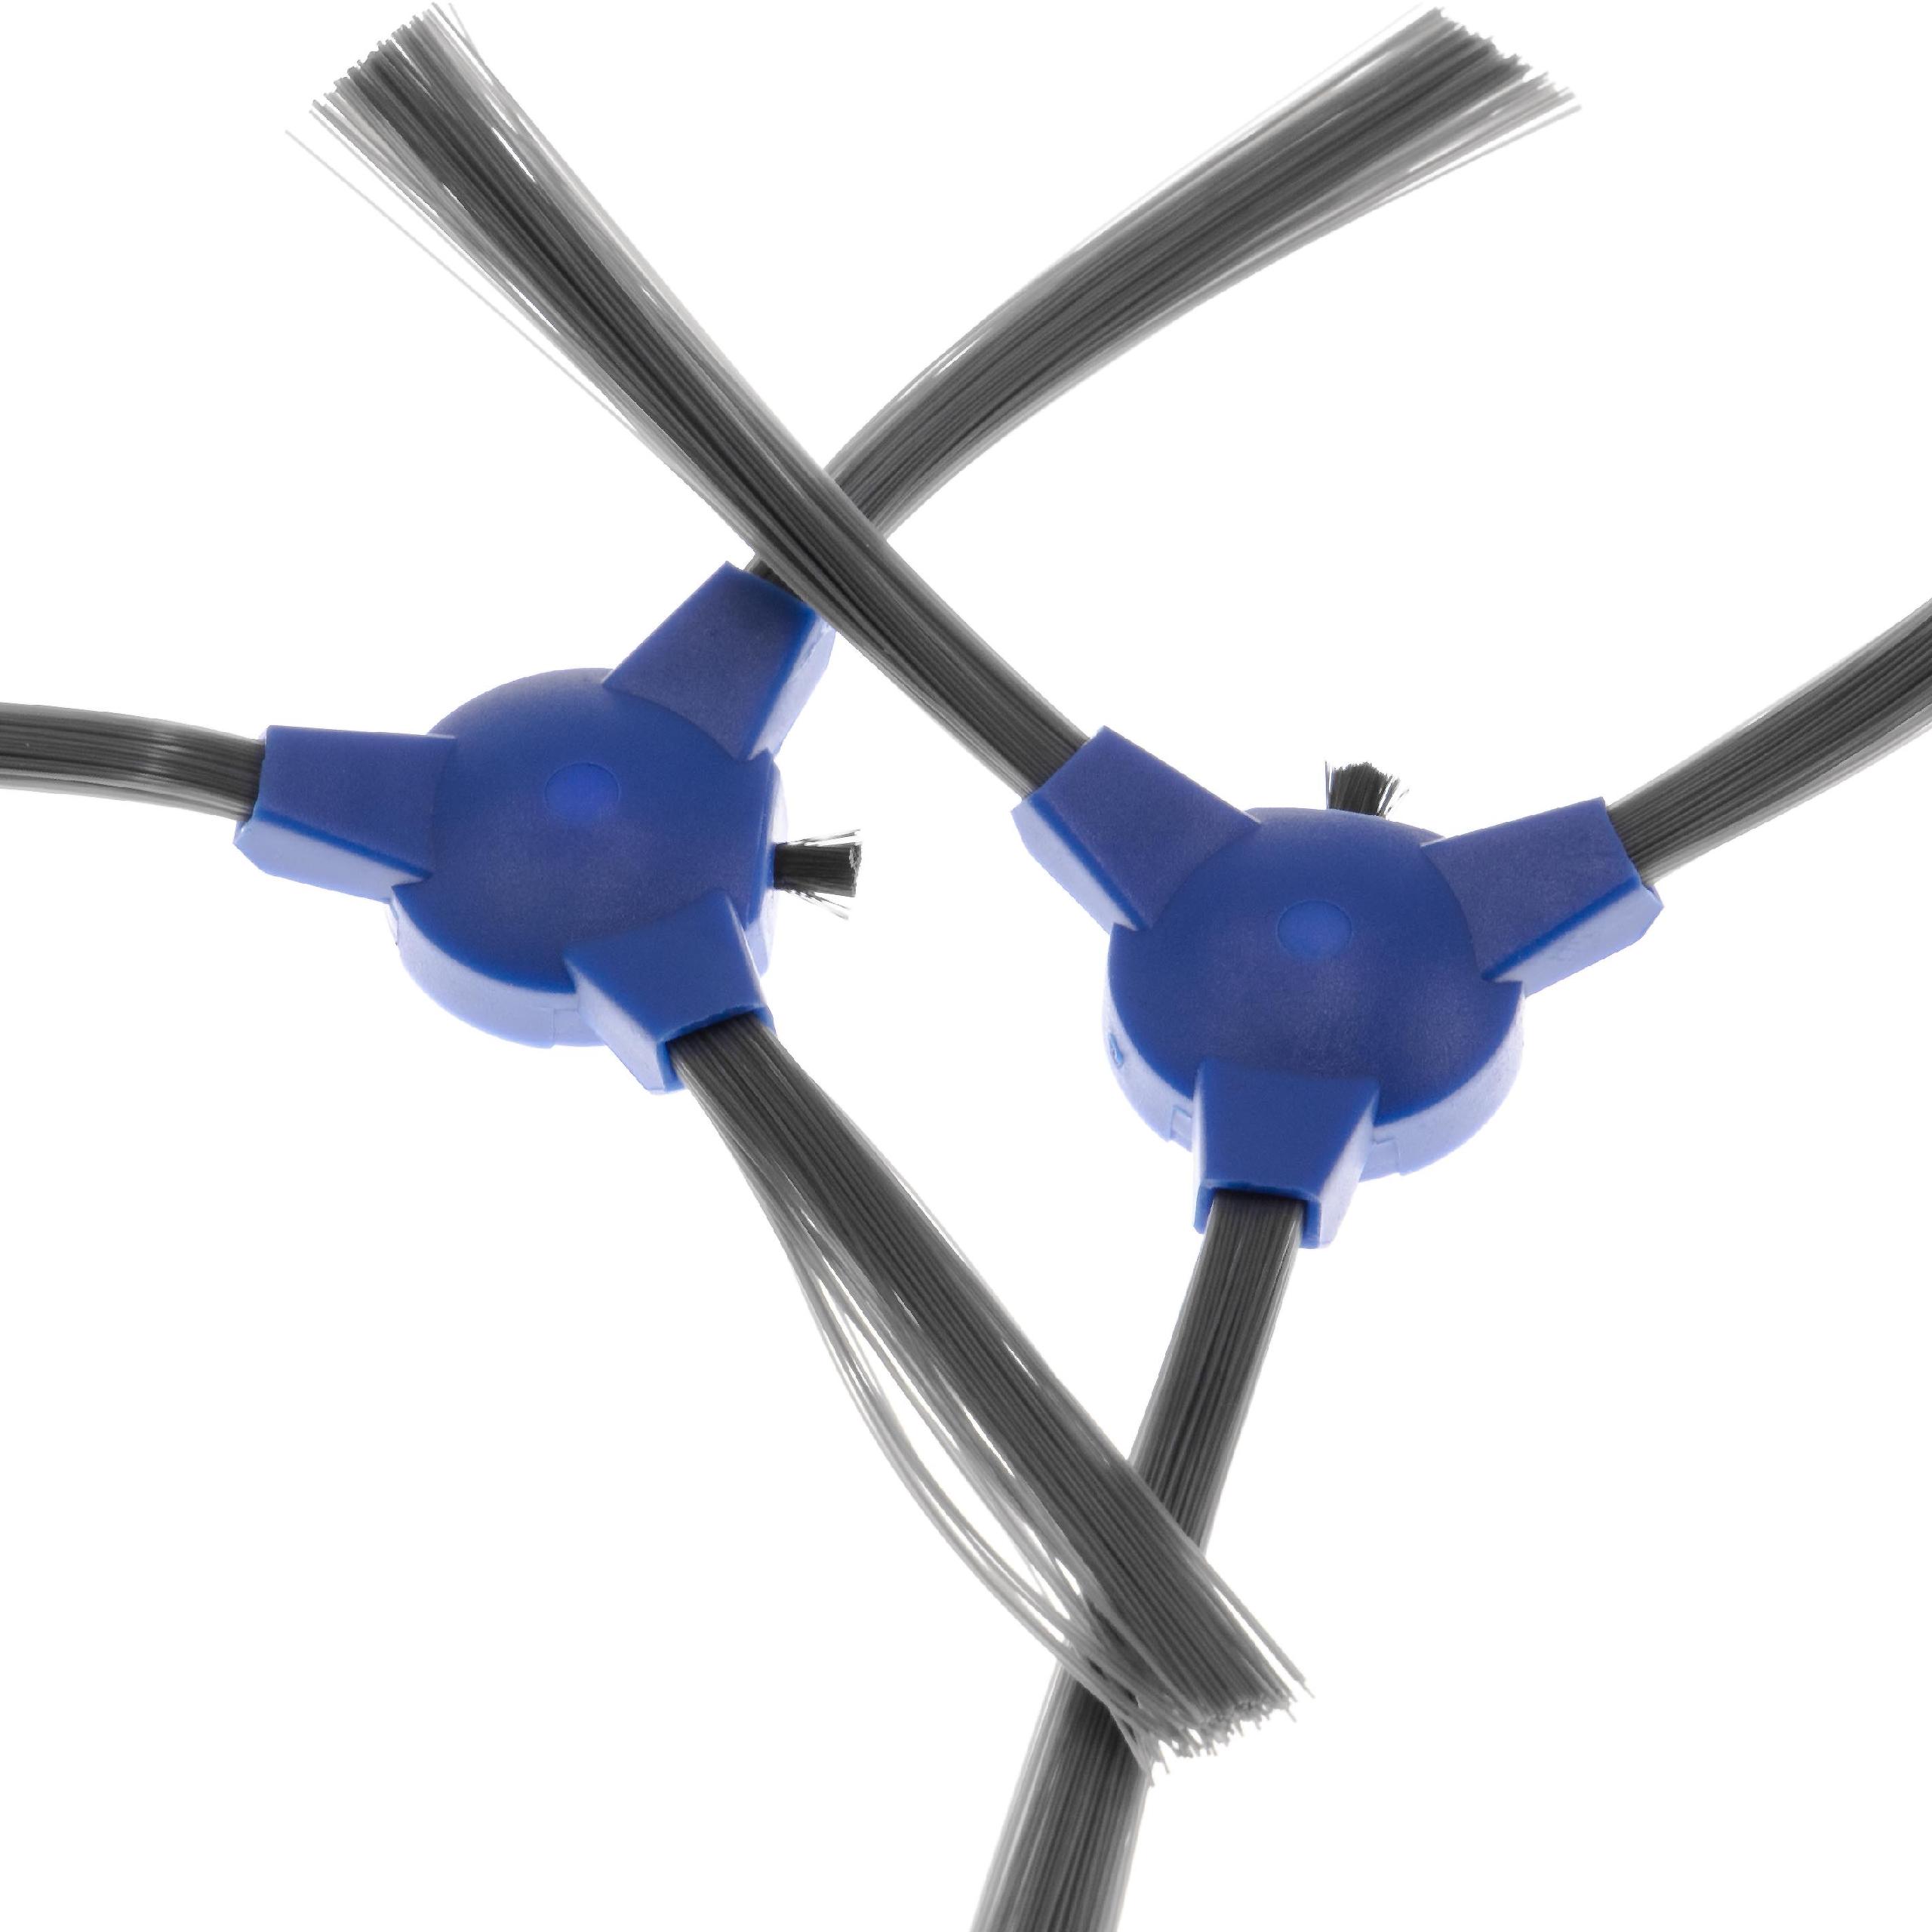 2x Cepillo lateral 3 brazos para robot aspirador Eufy, Tesvor 11S - Set de cepillos negro / gris / azul